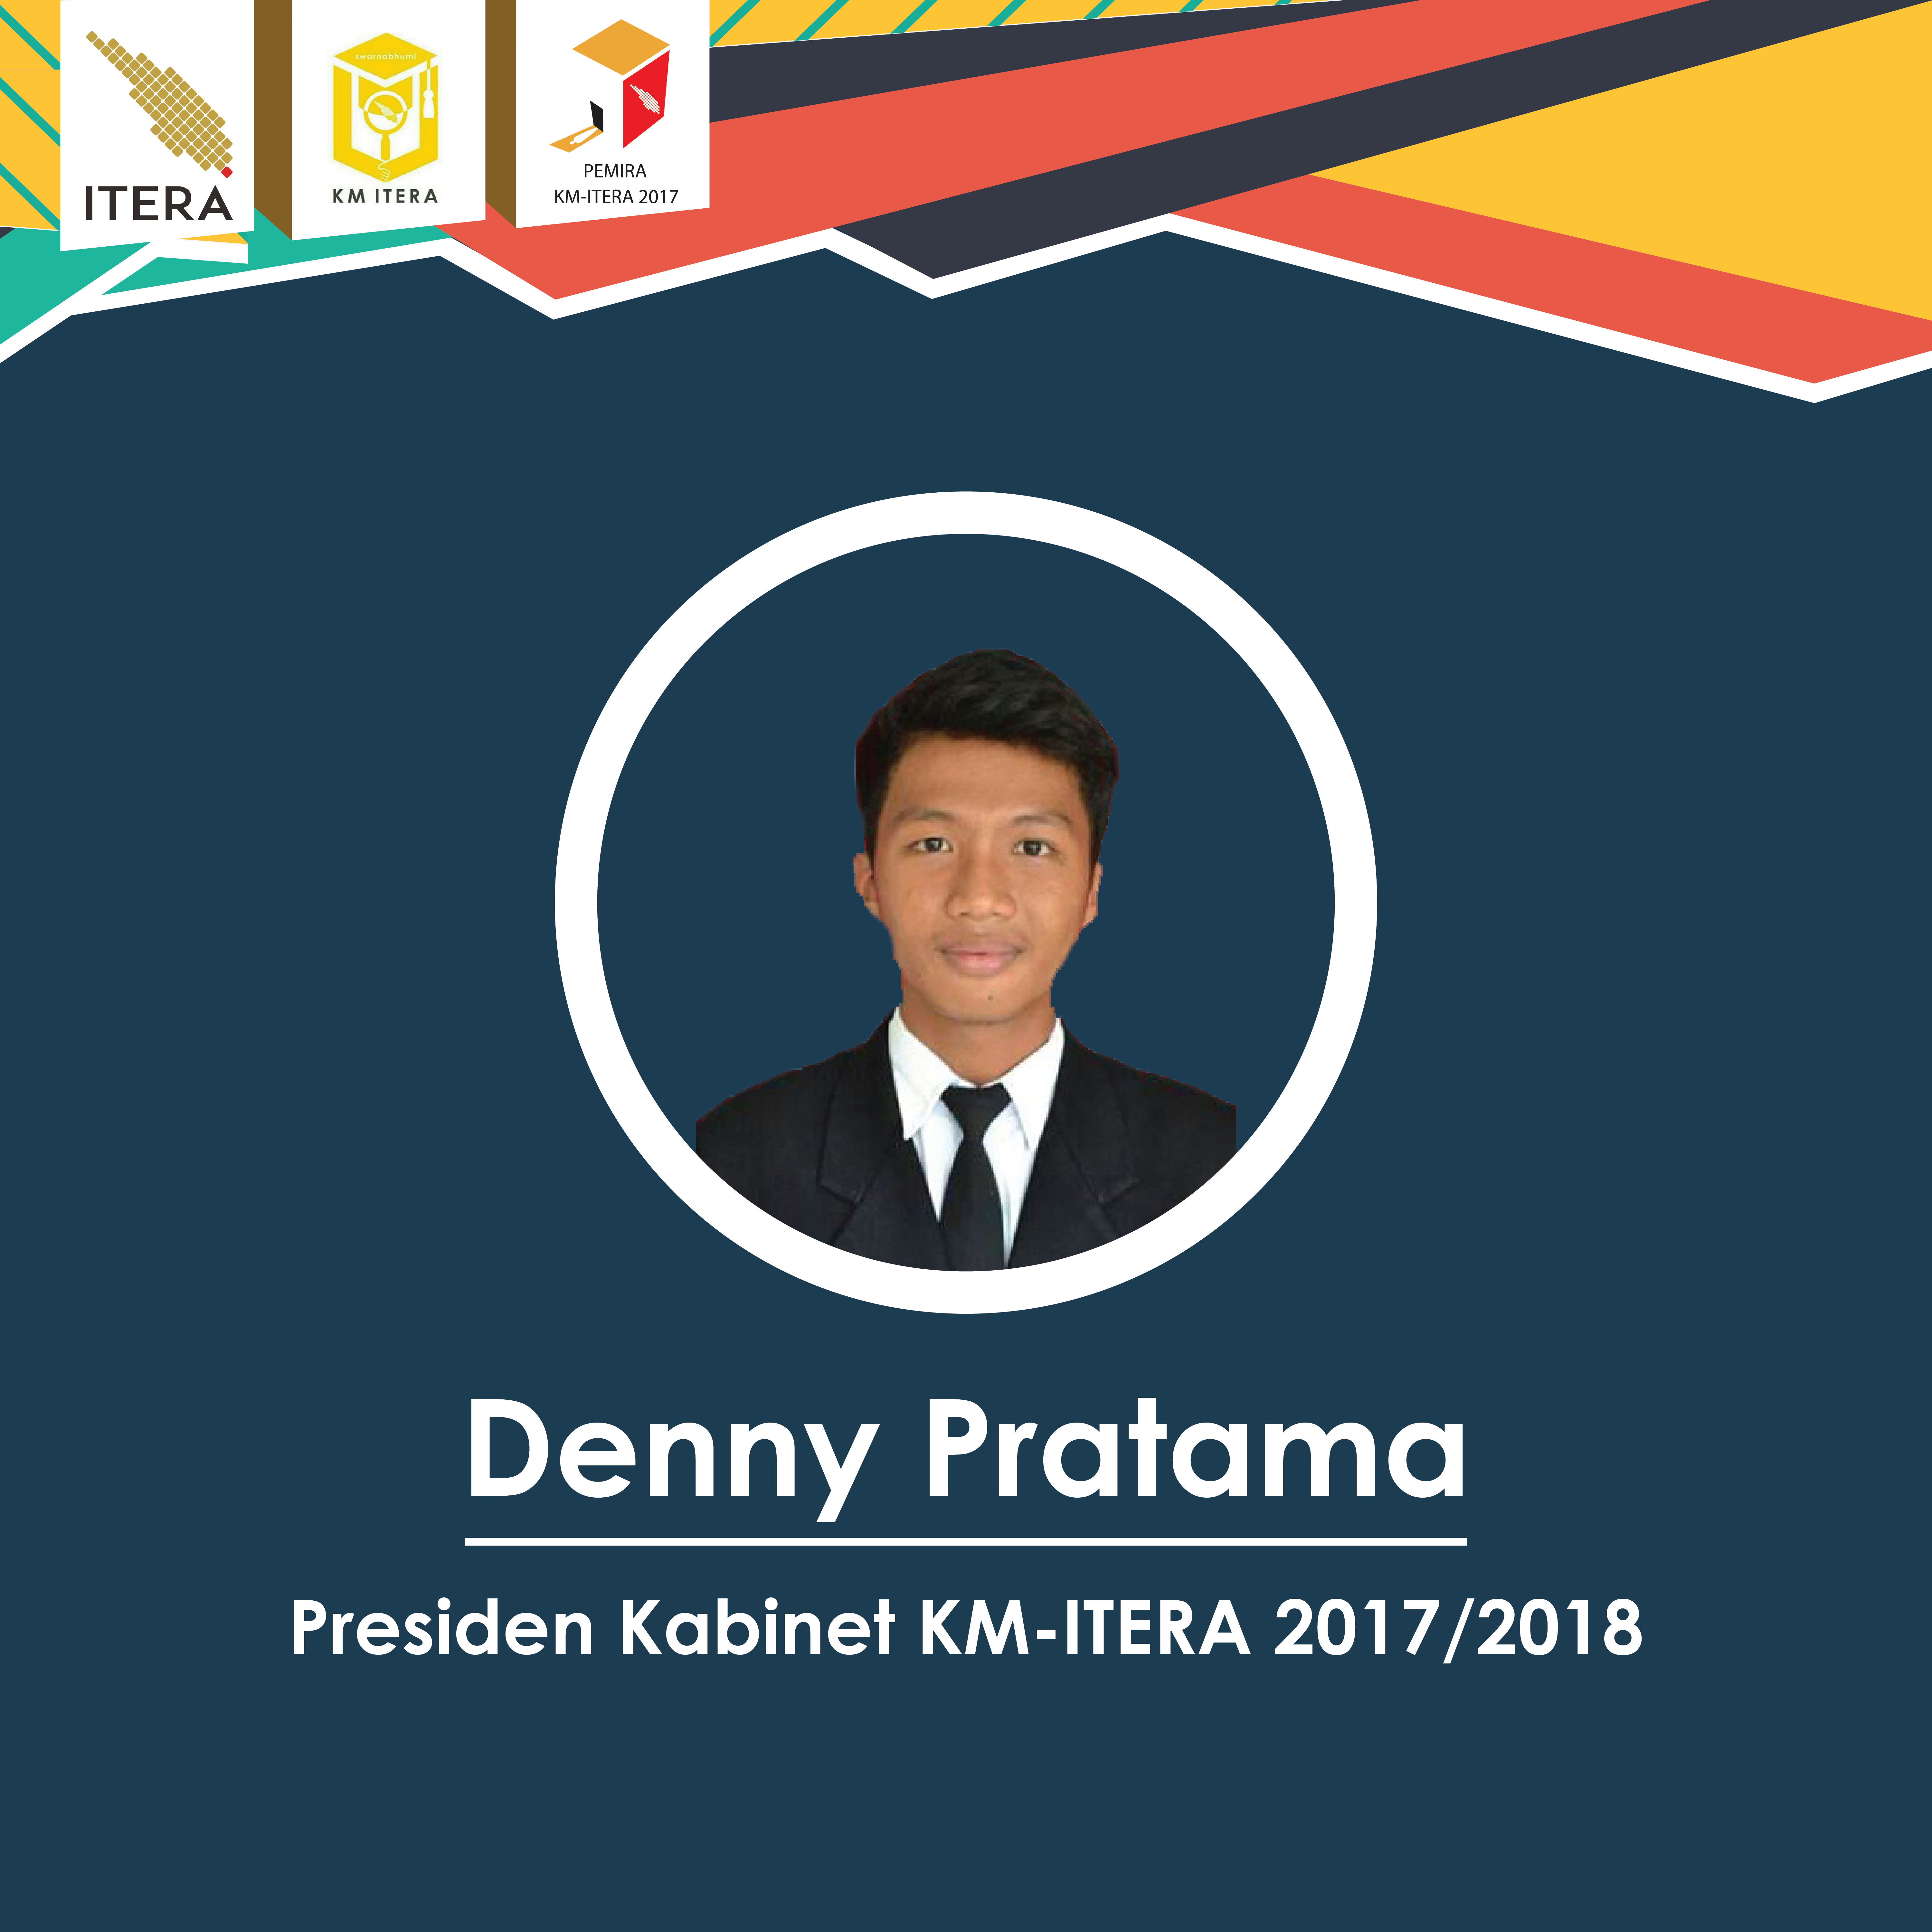 Denny Pratama Terpilih sebagai Presiden KM ITERA 2017/2018